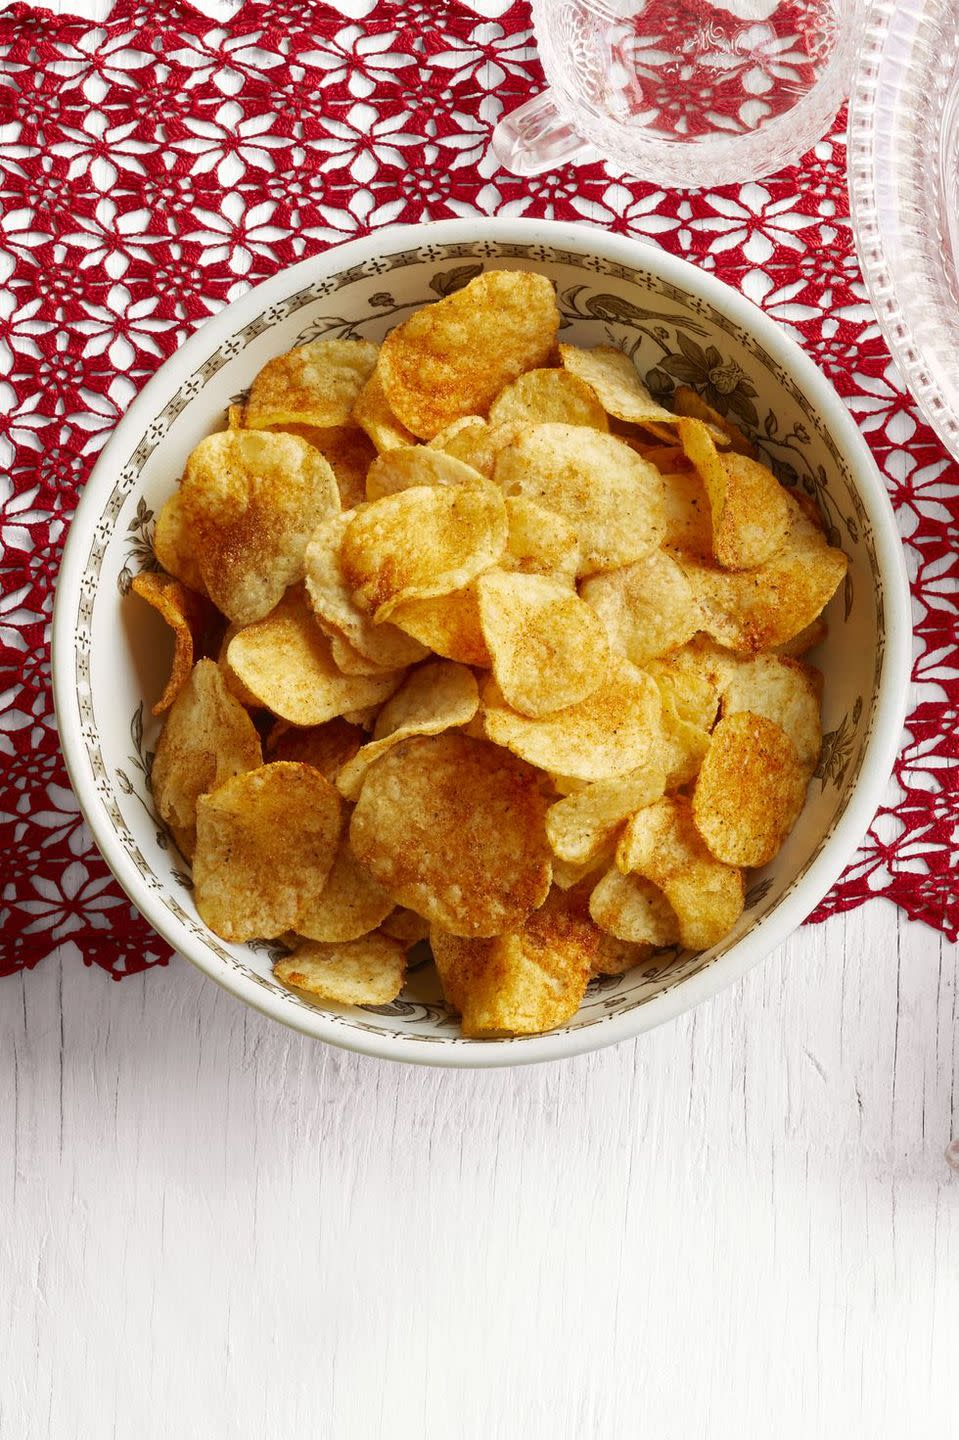 Spiced-Up Potato Chips